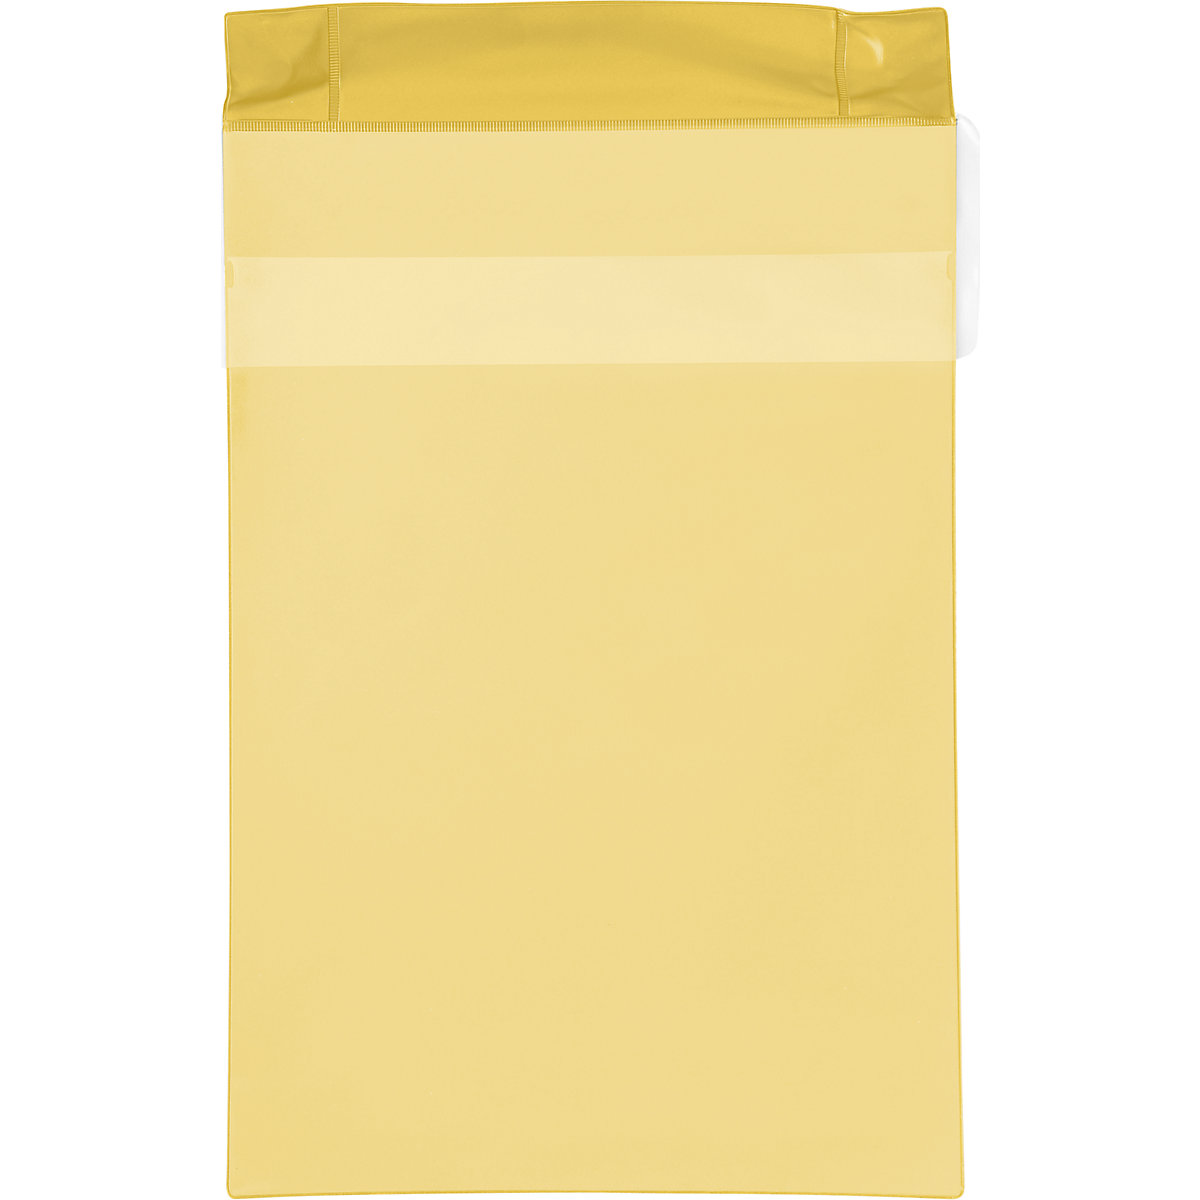 Magnetni džepovi od neodimija, uspravni format, s pokrovom za zaštitu od kiše, pak. 25 kom., u žutoj boji, DIN A4, od 2 pak.-8